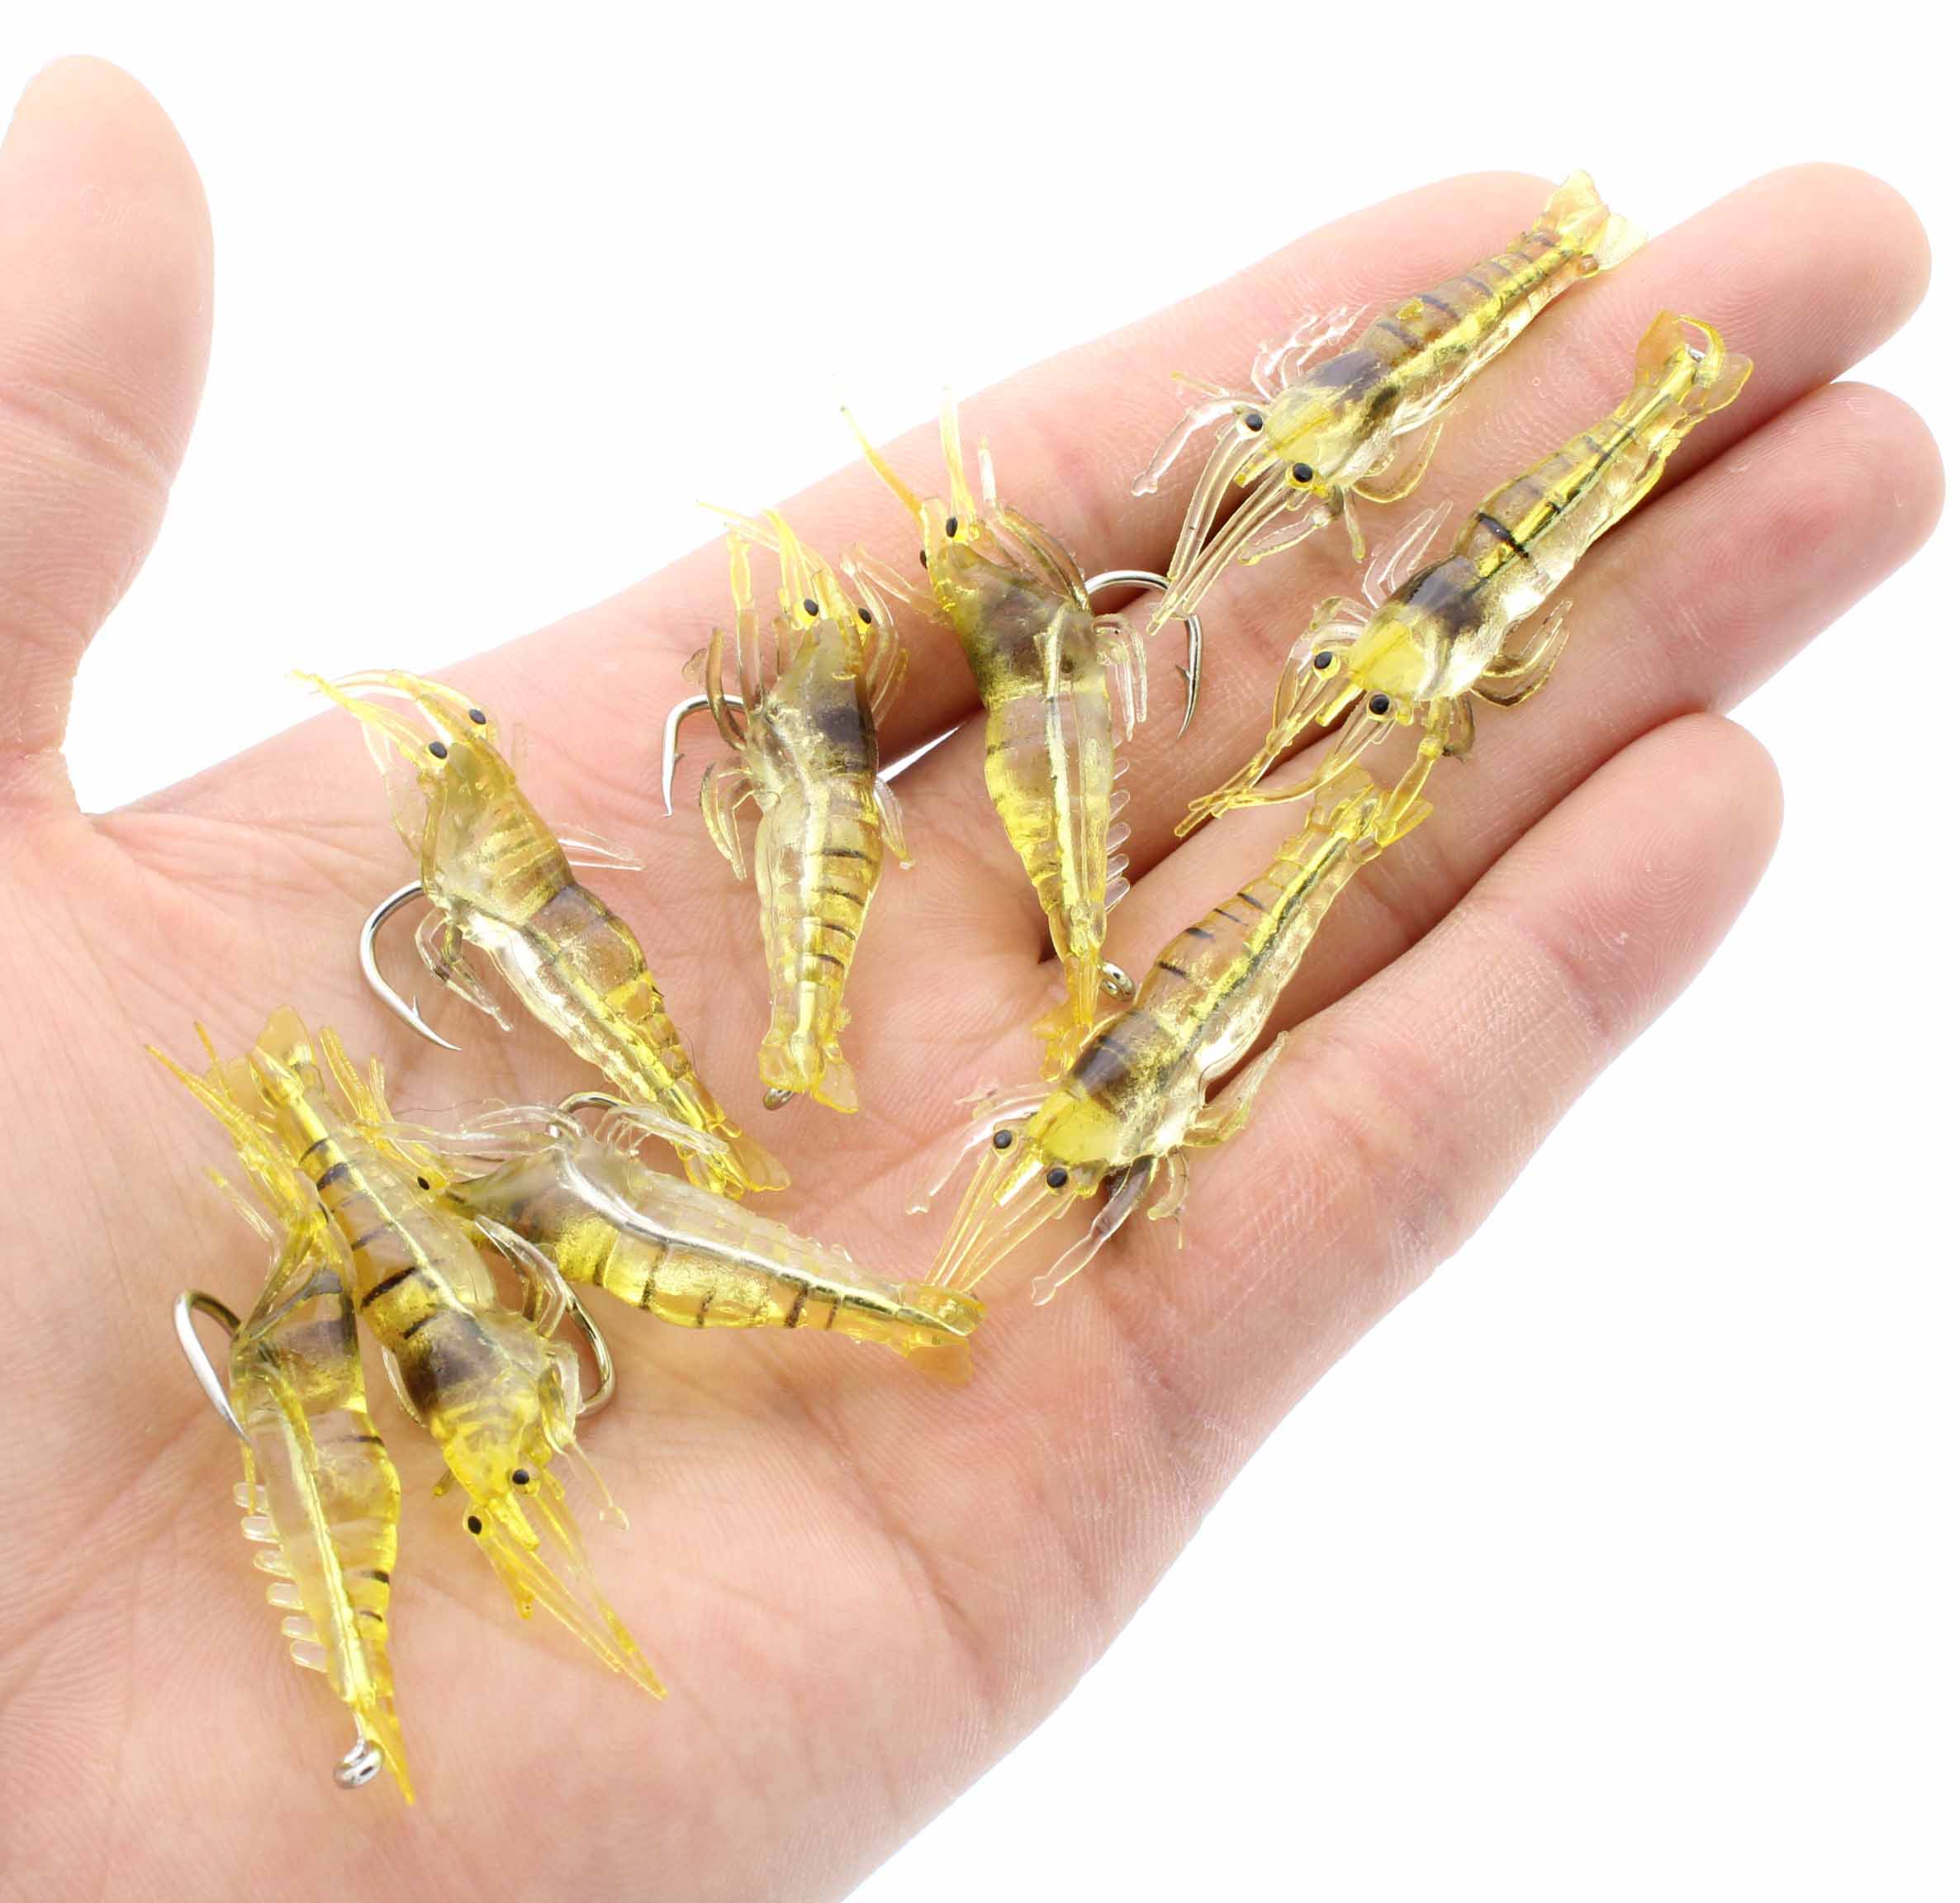 10PCS Isca Artificial Soft Shrimp Lure Worm For Fishing Bait 1.3g/5cm Hook Sharp Crankbait